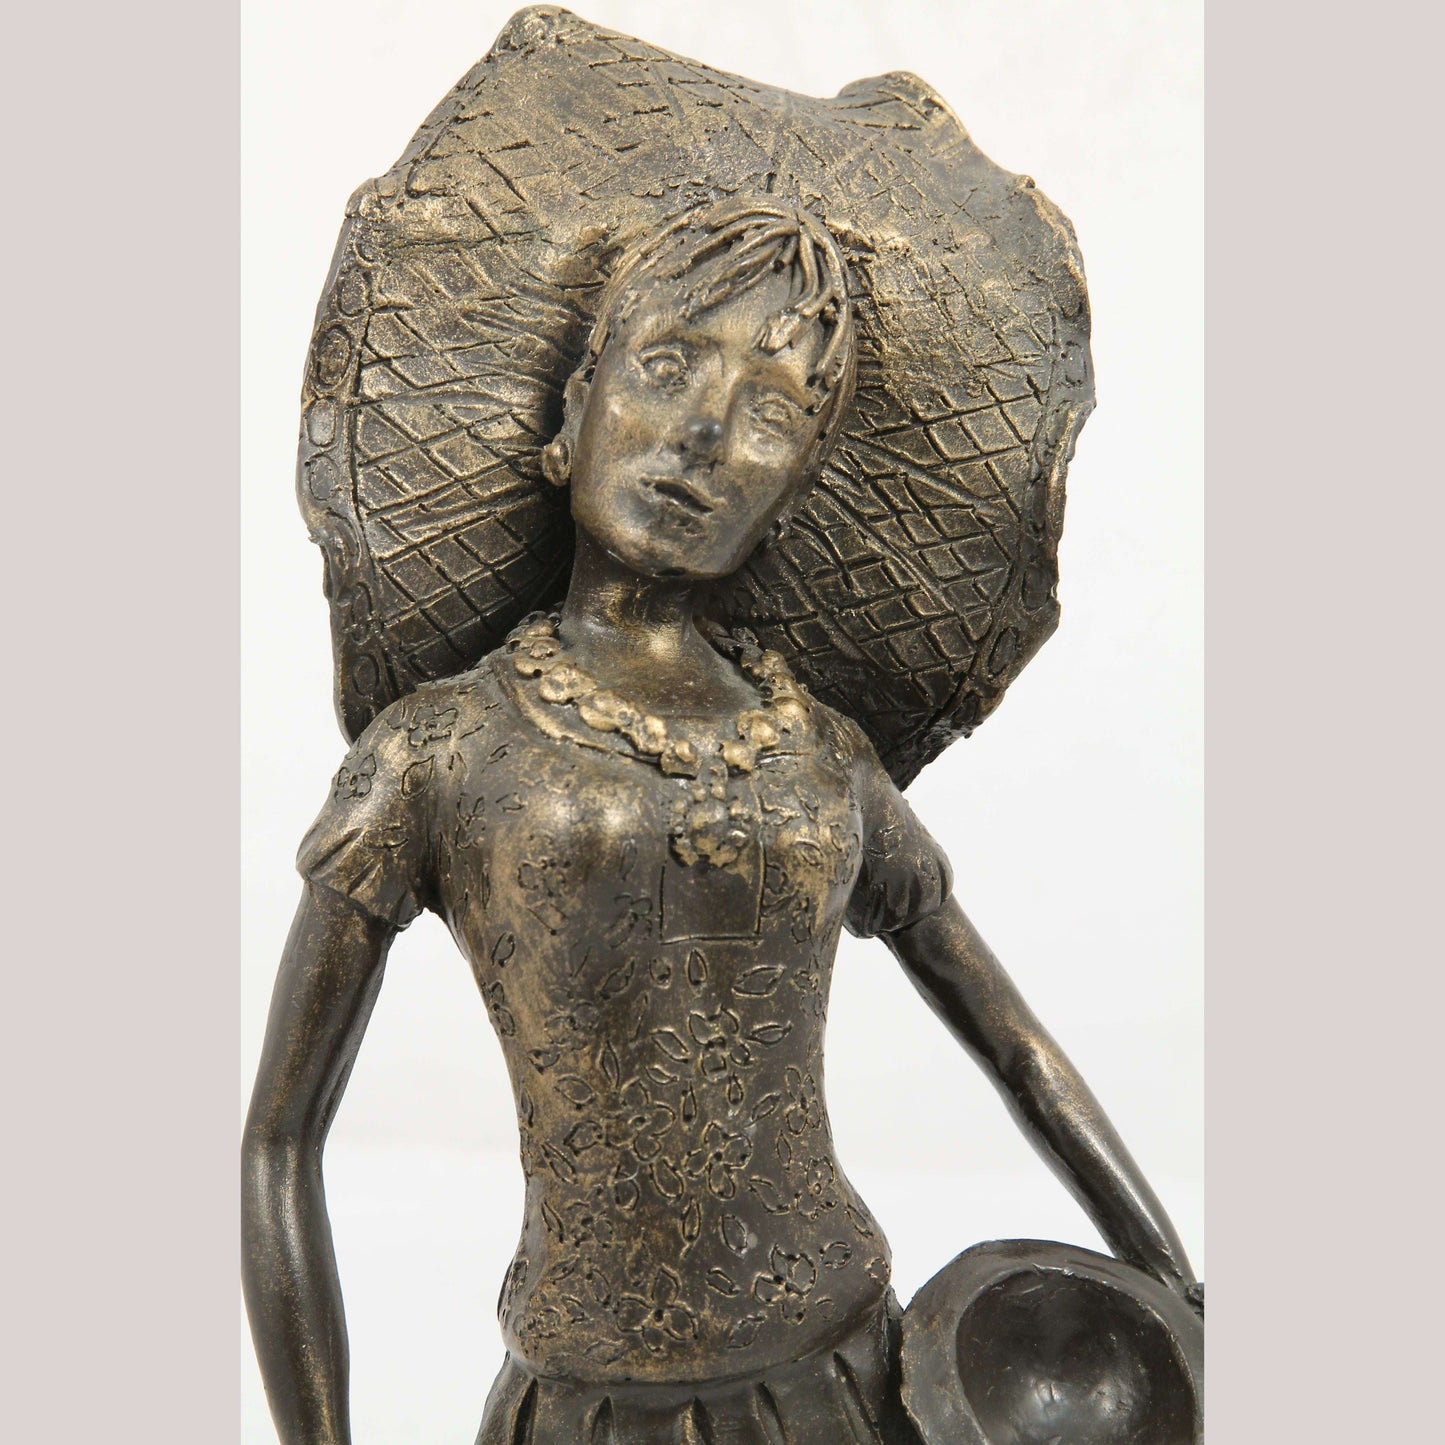 Vintage Bronze/Plaster Figurine Mexican Woman Dancer Tehuana Headpiece Décor